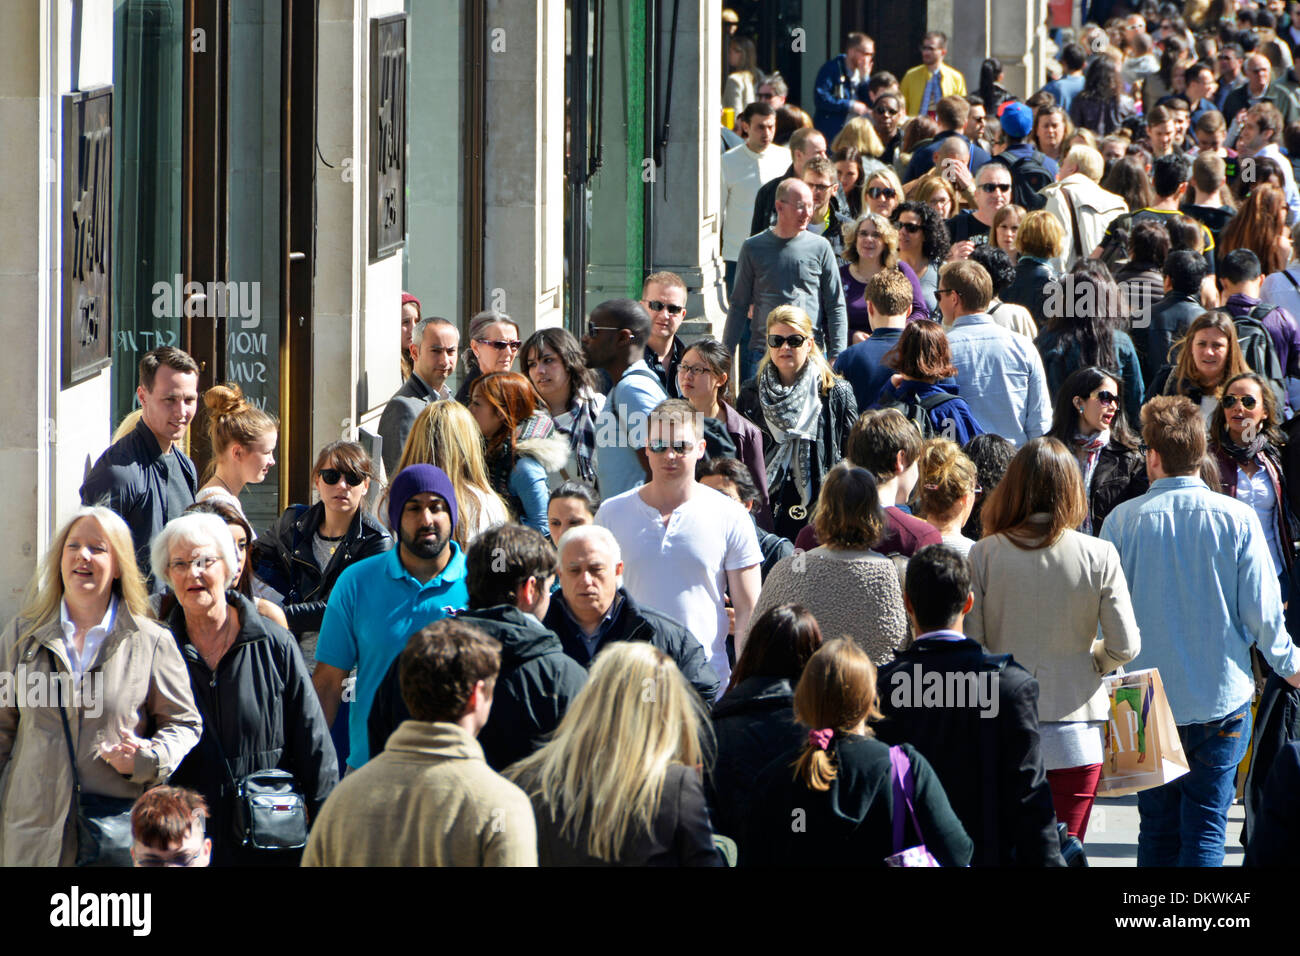 Vista ravvicinata dall'alto della folla di persone che fanno shopping sul marciapiede di Regent Street nell'affollata area dello shopping del West End fuori dal negozio H&M Londra Inghilterra Regno Unito Foto Stock